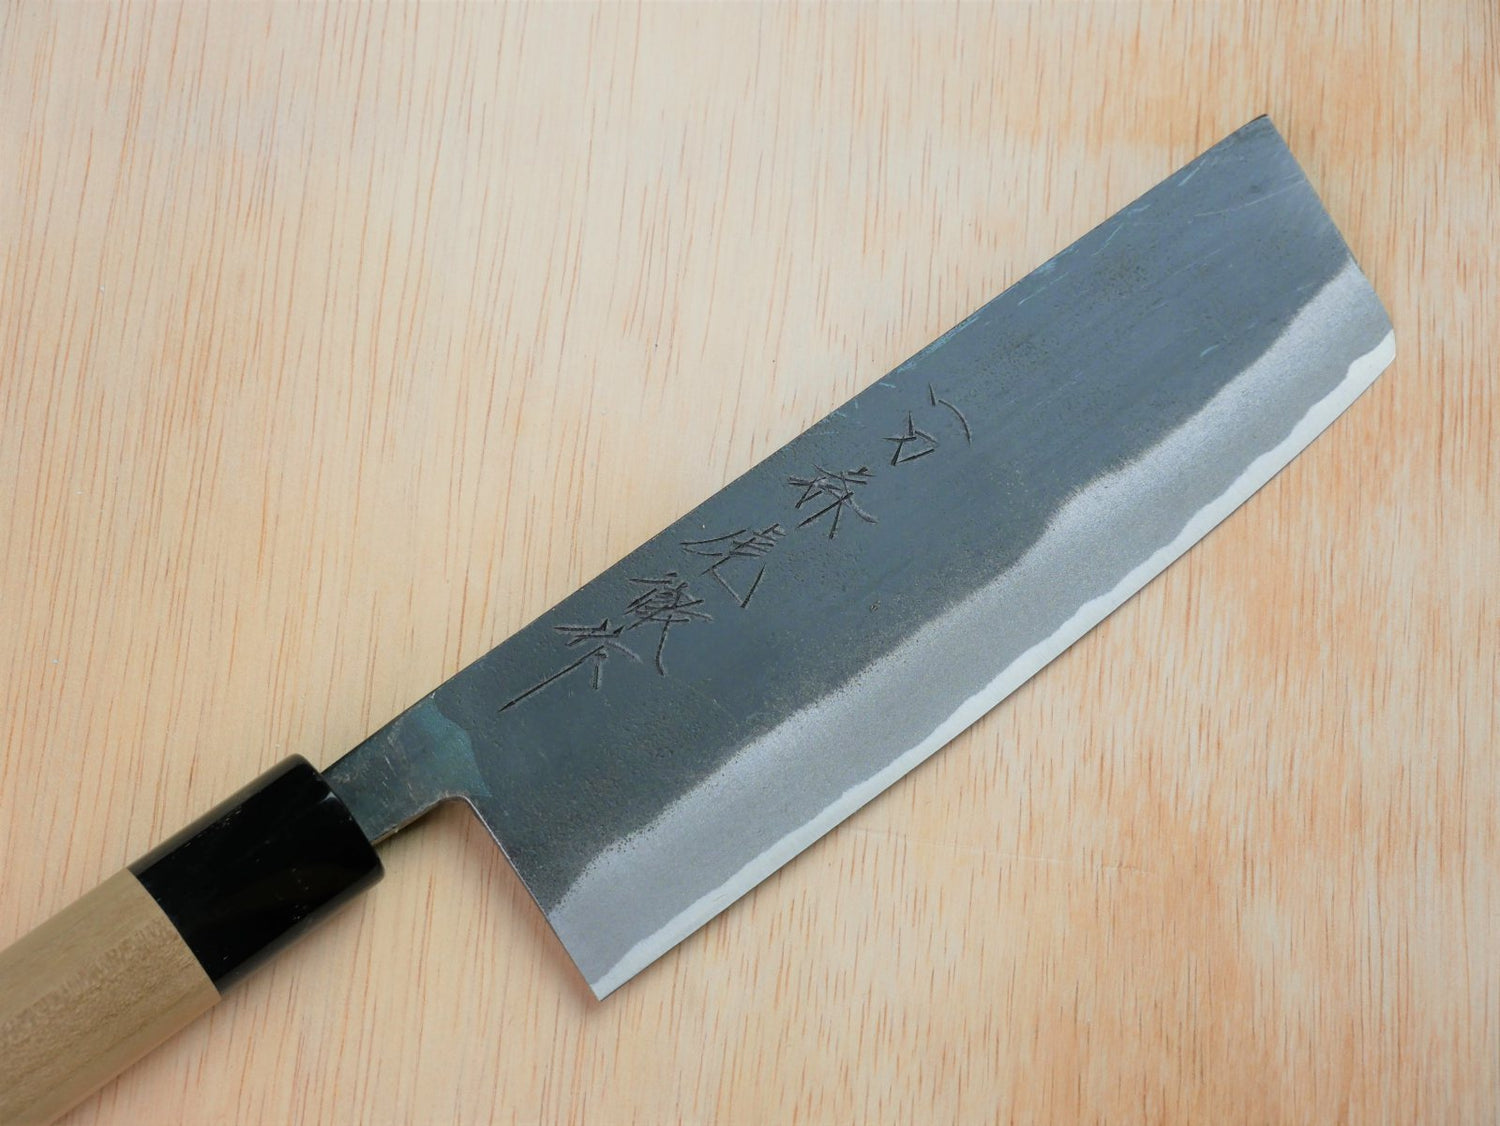 Blade of 165mm Sirogami No.2 kurouchi Nakiri made by Takahashikusu